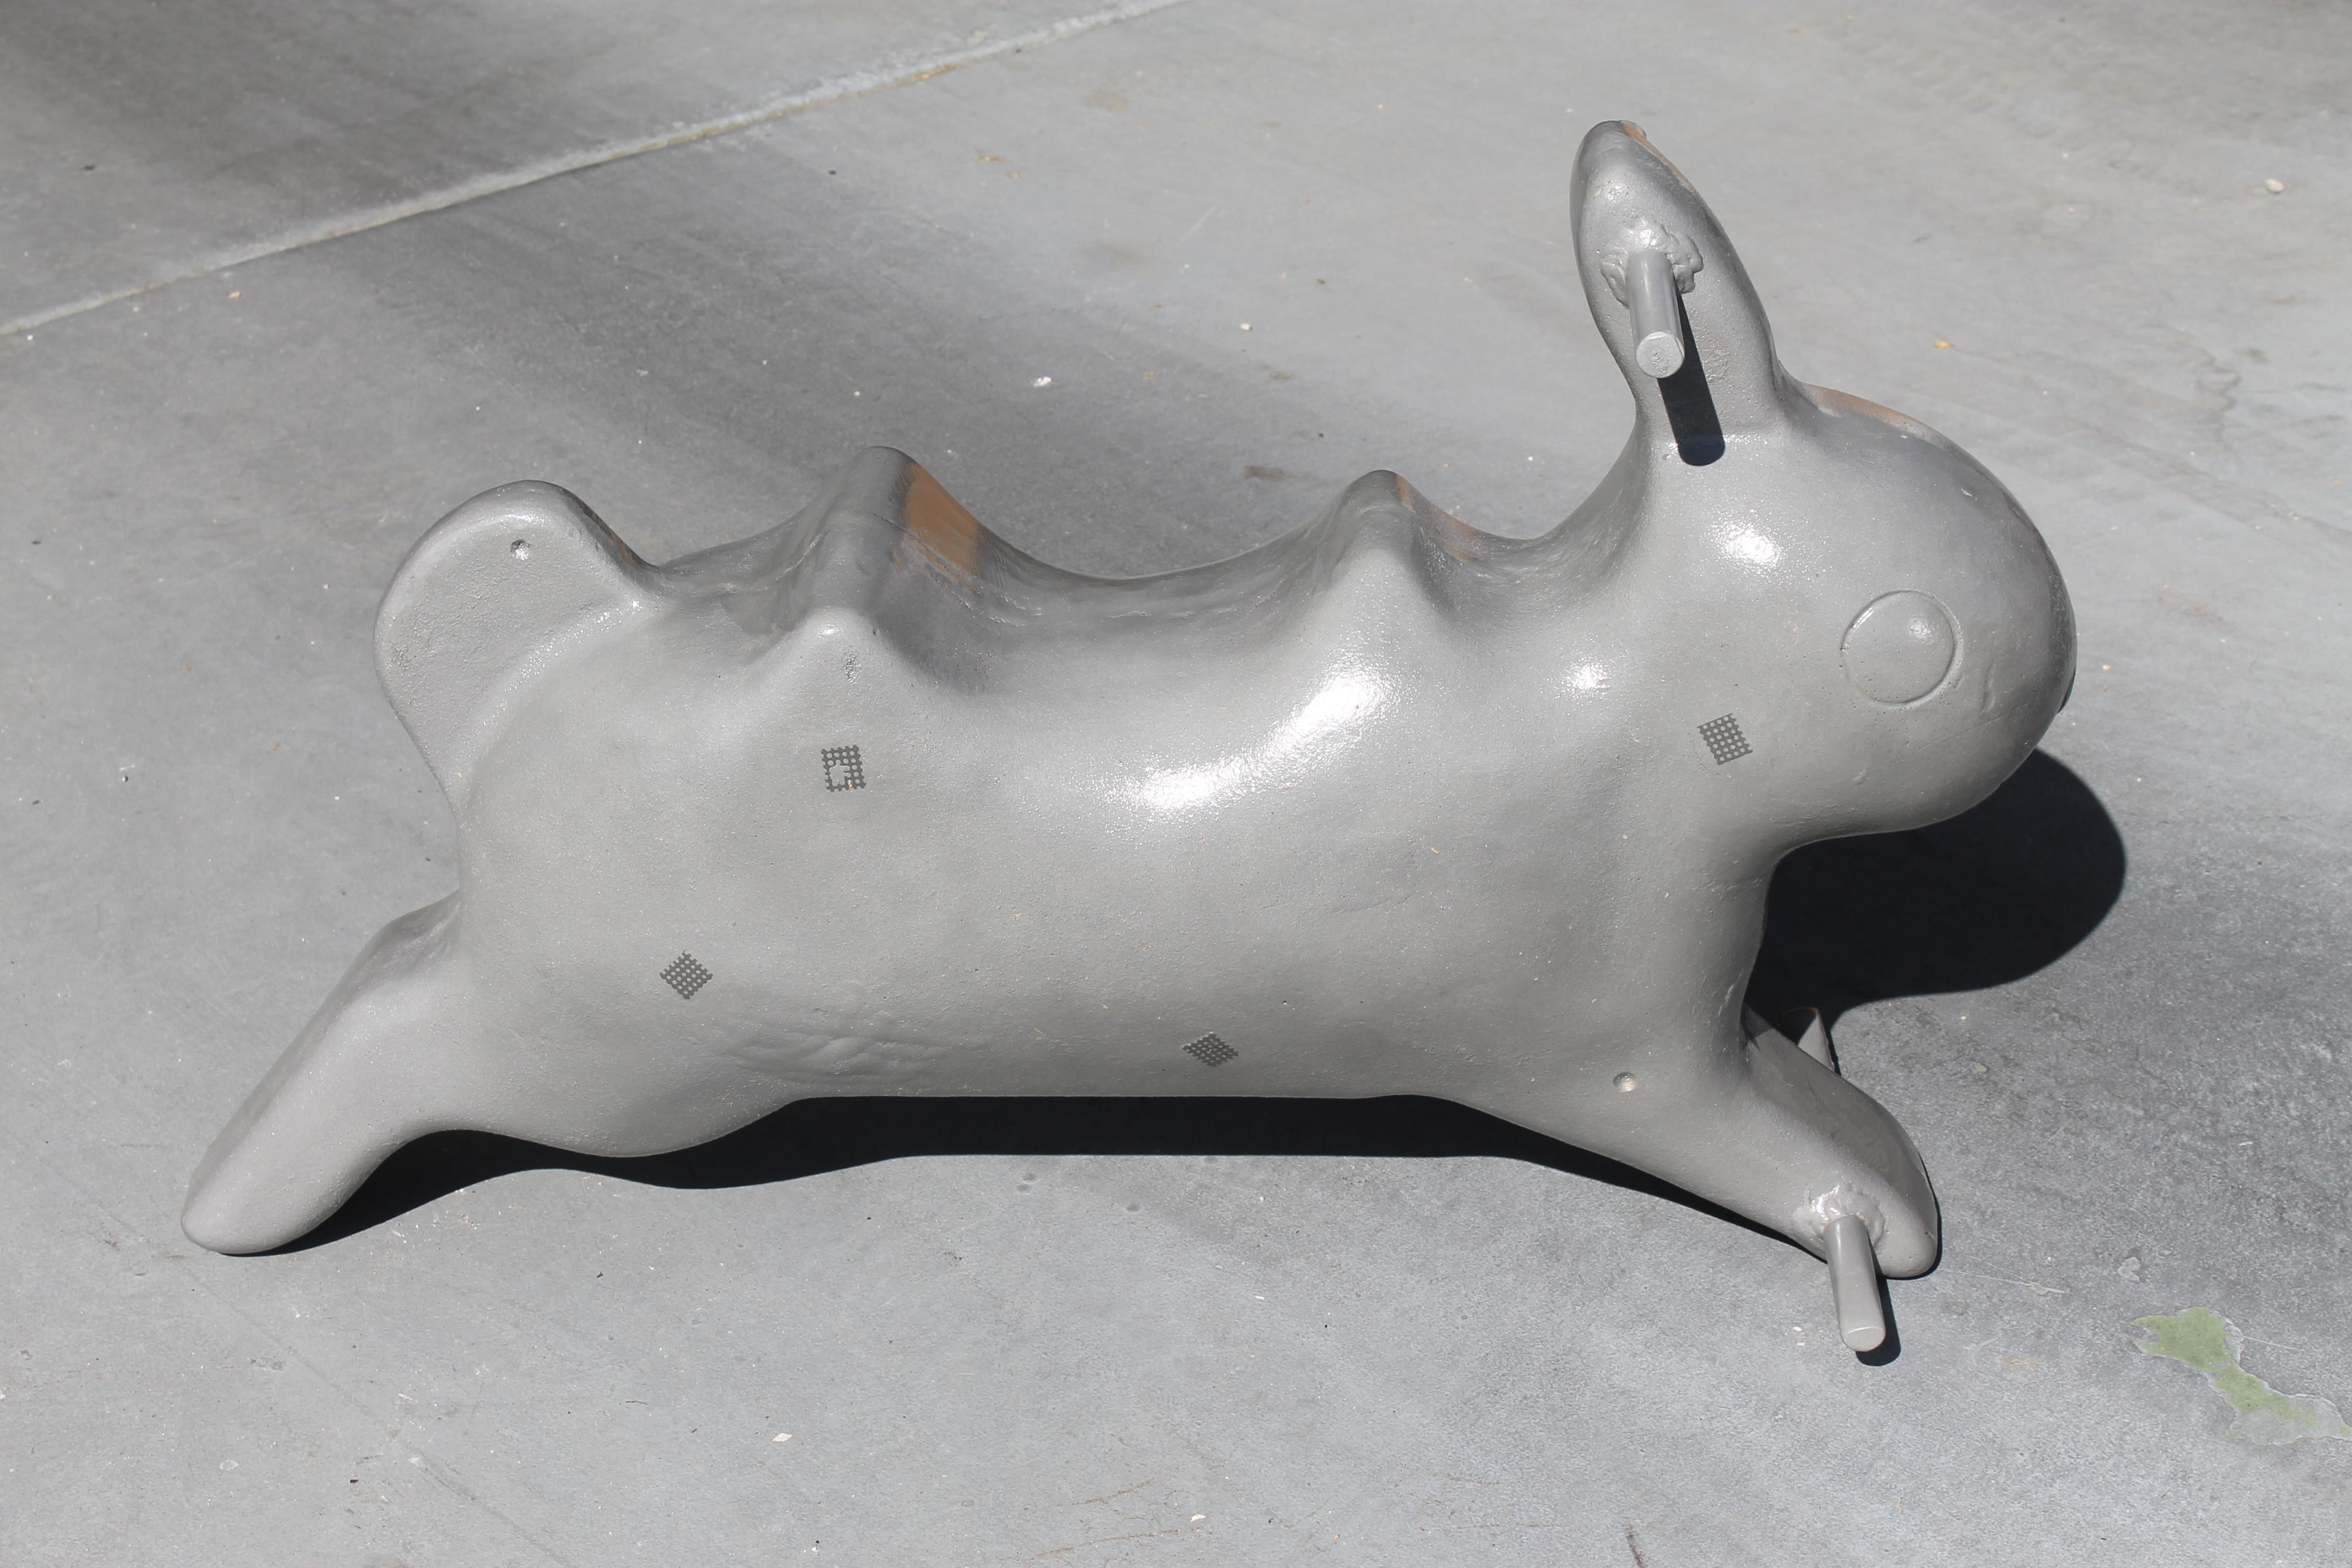 Cette sculpture de lapin en aluminium était à l'origine un manège à ressort situé dans les parcs. Le ressort n'est pas inclus. C'est plus sculptural et ça fait partie de l'histoire de l'Amérique. On l'a fait sabler et vernir. Le lapin mesure 33